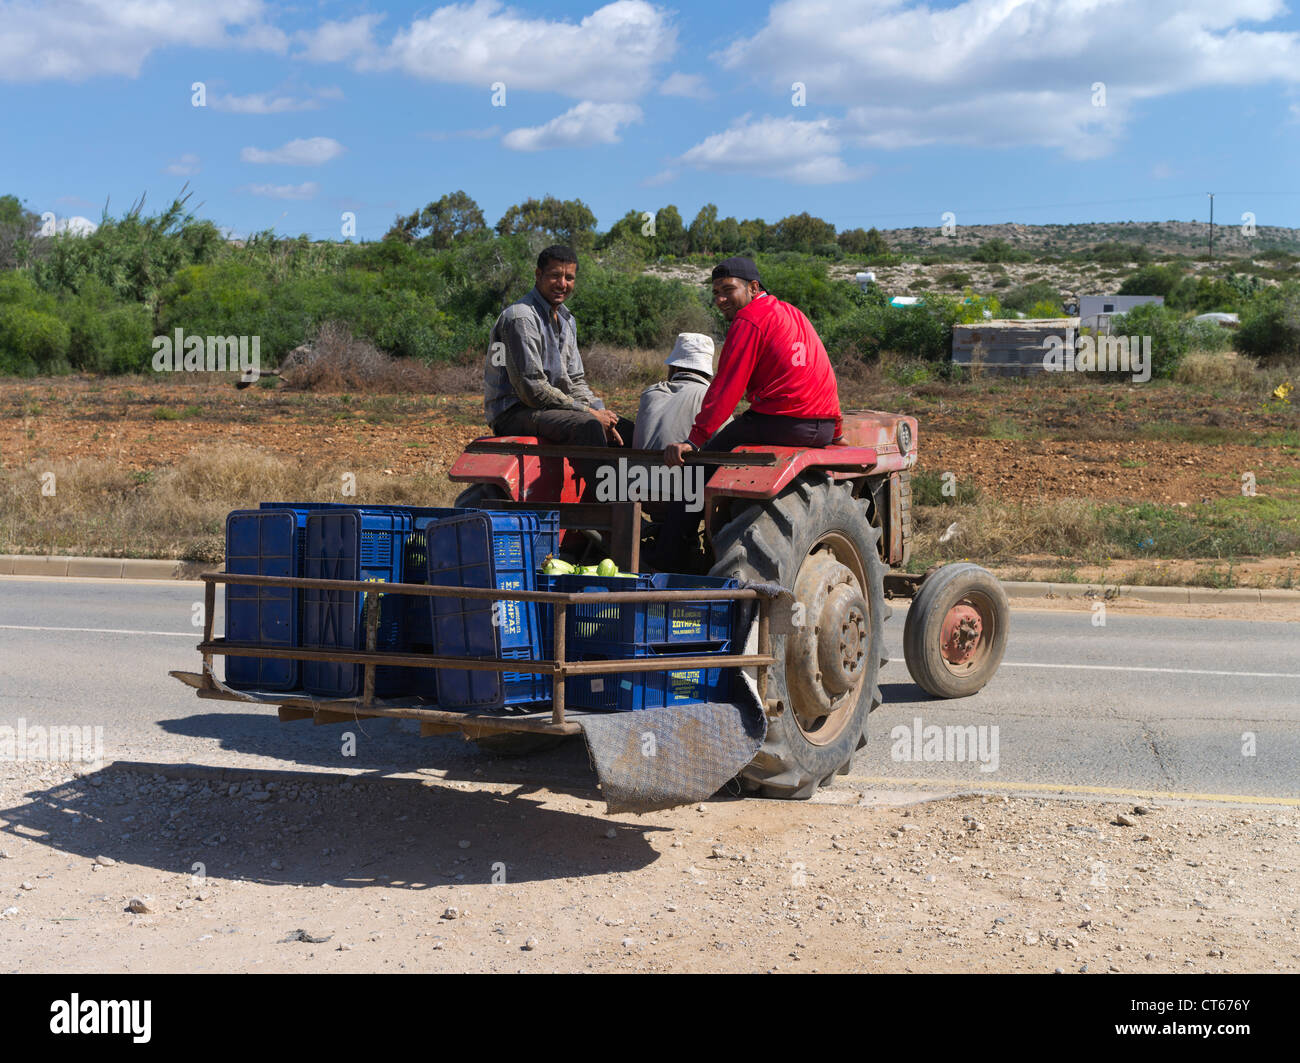 dh zyprische Landarbeiter Griechenland LANDWIRTSCHAFT SÜDZYPERN Felder auf Traktor Landarbeiter Traktoren Insel Arbeiter Menschen Landwirtschaft Stockfoto